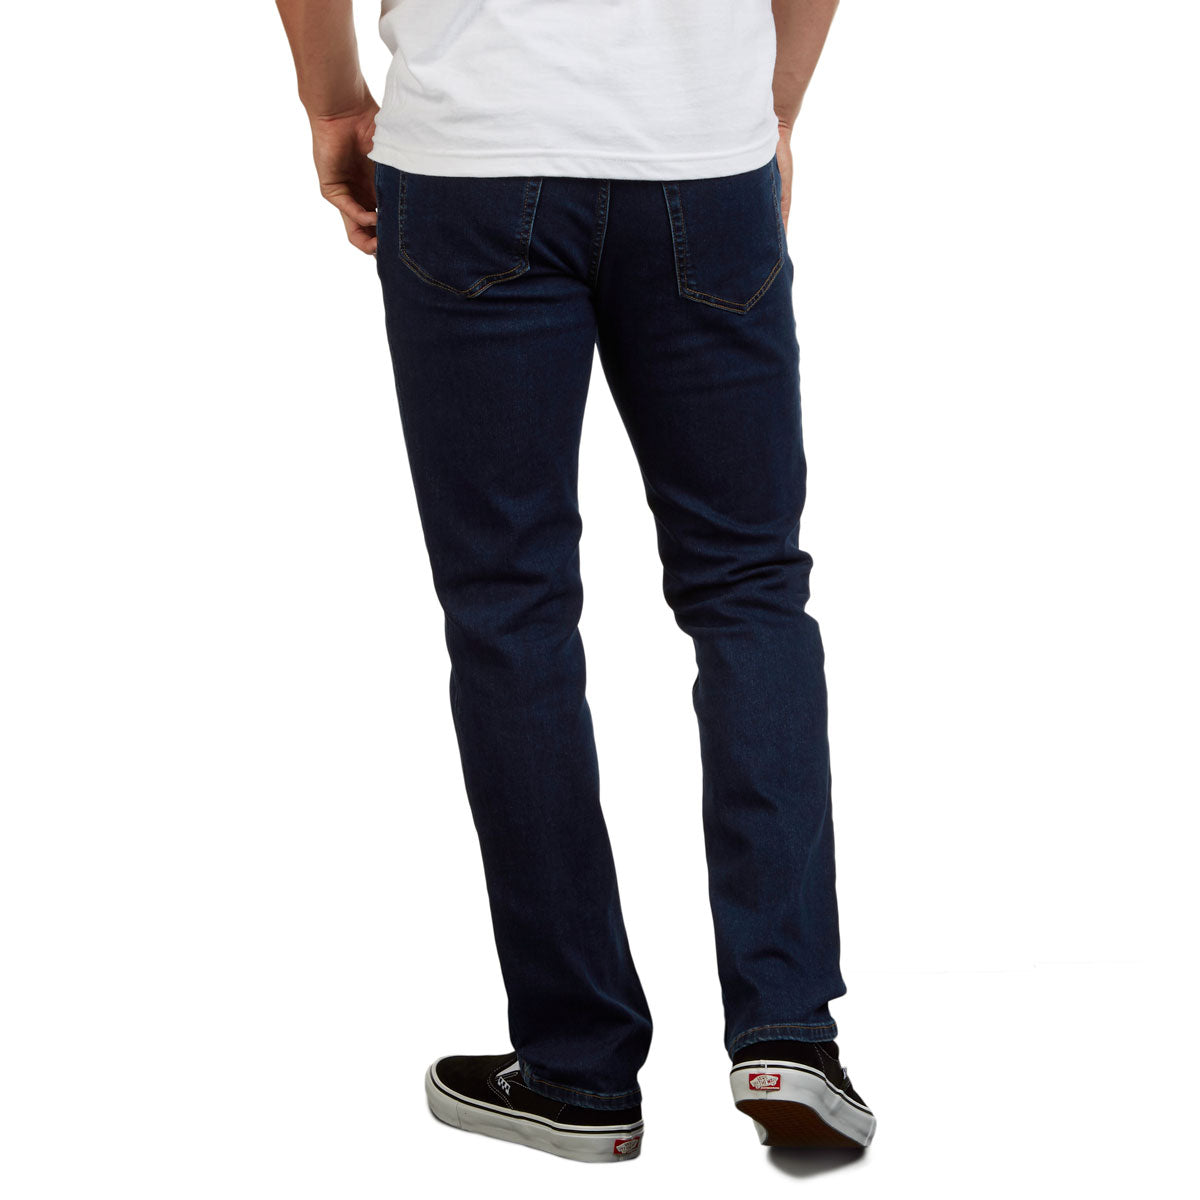 CCS Standard Plus Slim Denim Jeans - Indigo image 3